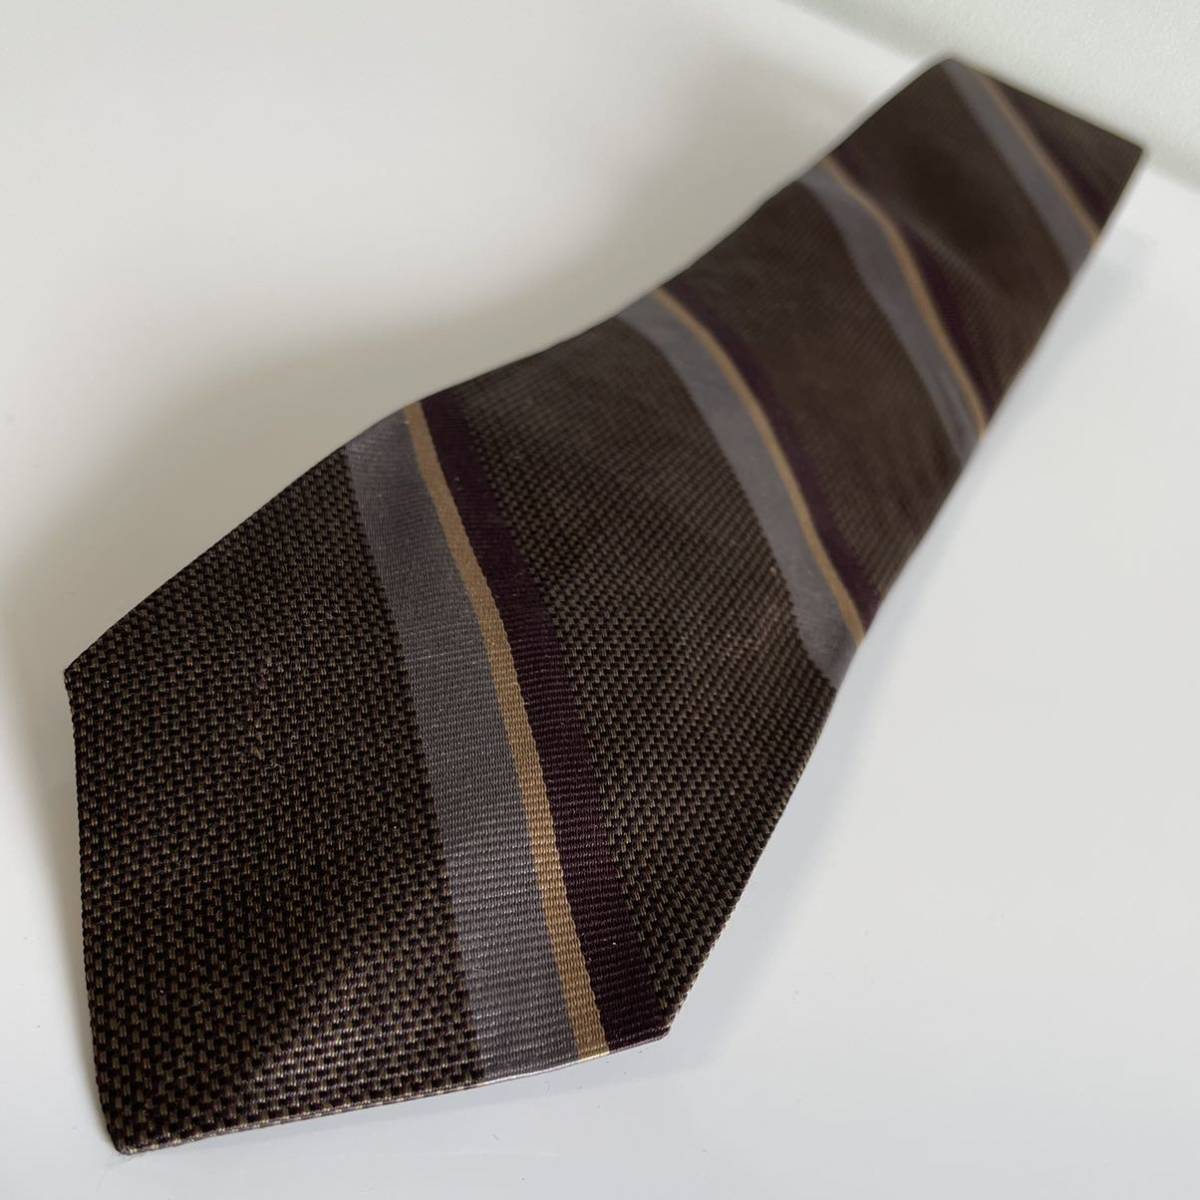 POLO by RALPH LAUREN( Polo bai Ralph Lauren ) Brown полоса галстук 